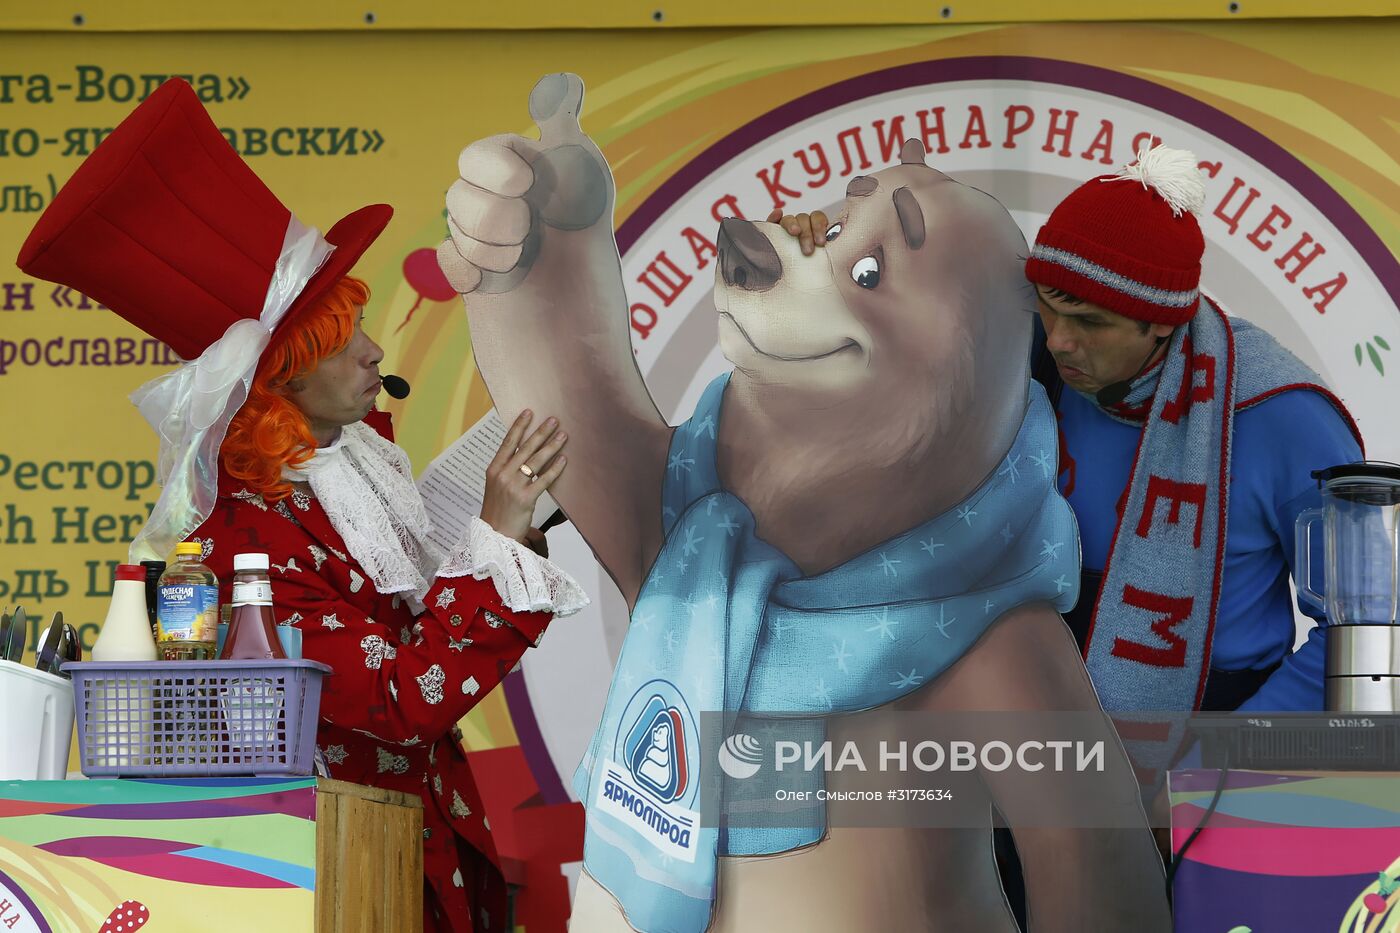 Дед Мороз из Великого Устюга посетил гастрономический праздник "Пир на Волге"